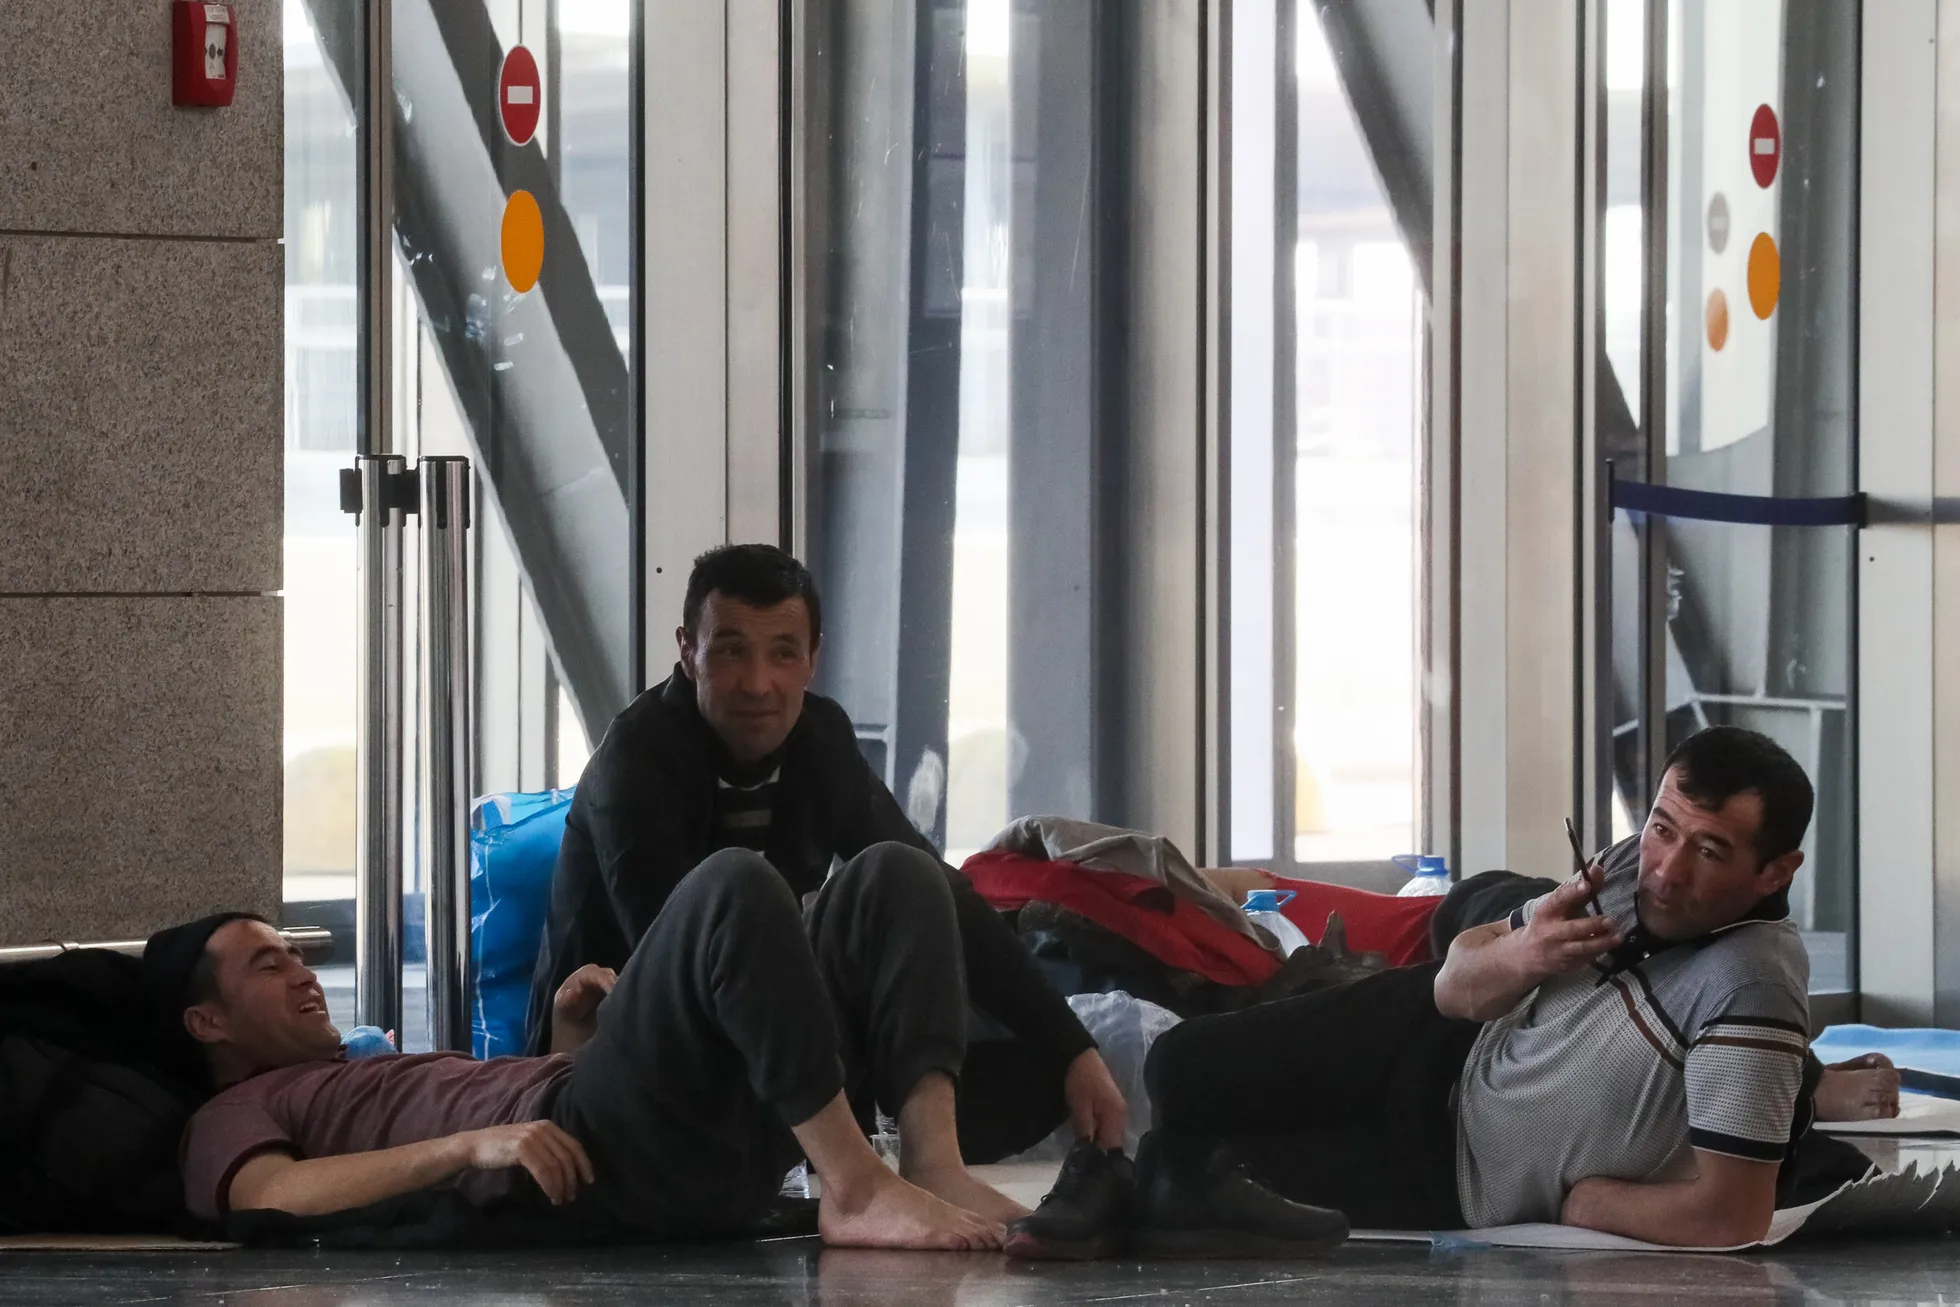 Need härrad on 25. märtsi seisuga veel lennujaamas lõksus, kuid tundub, et vaatamata olukorrale proovitakse tunda end mugavalt ja tuju üleval hoida.